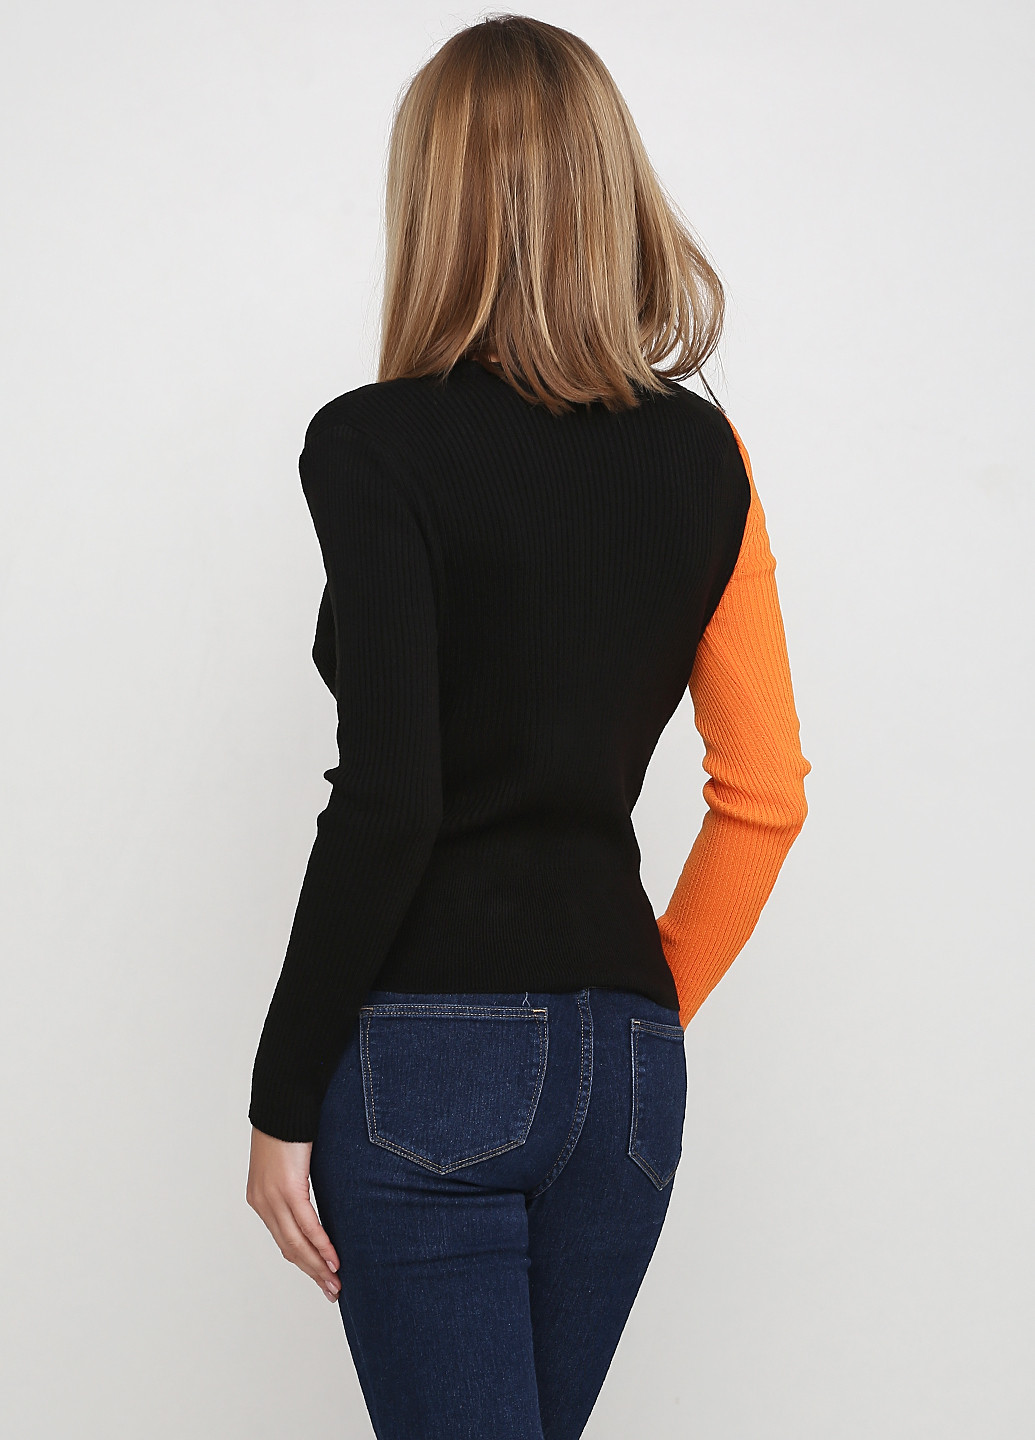 Оранжевый демисезонный пуловер пуловер Griffon